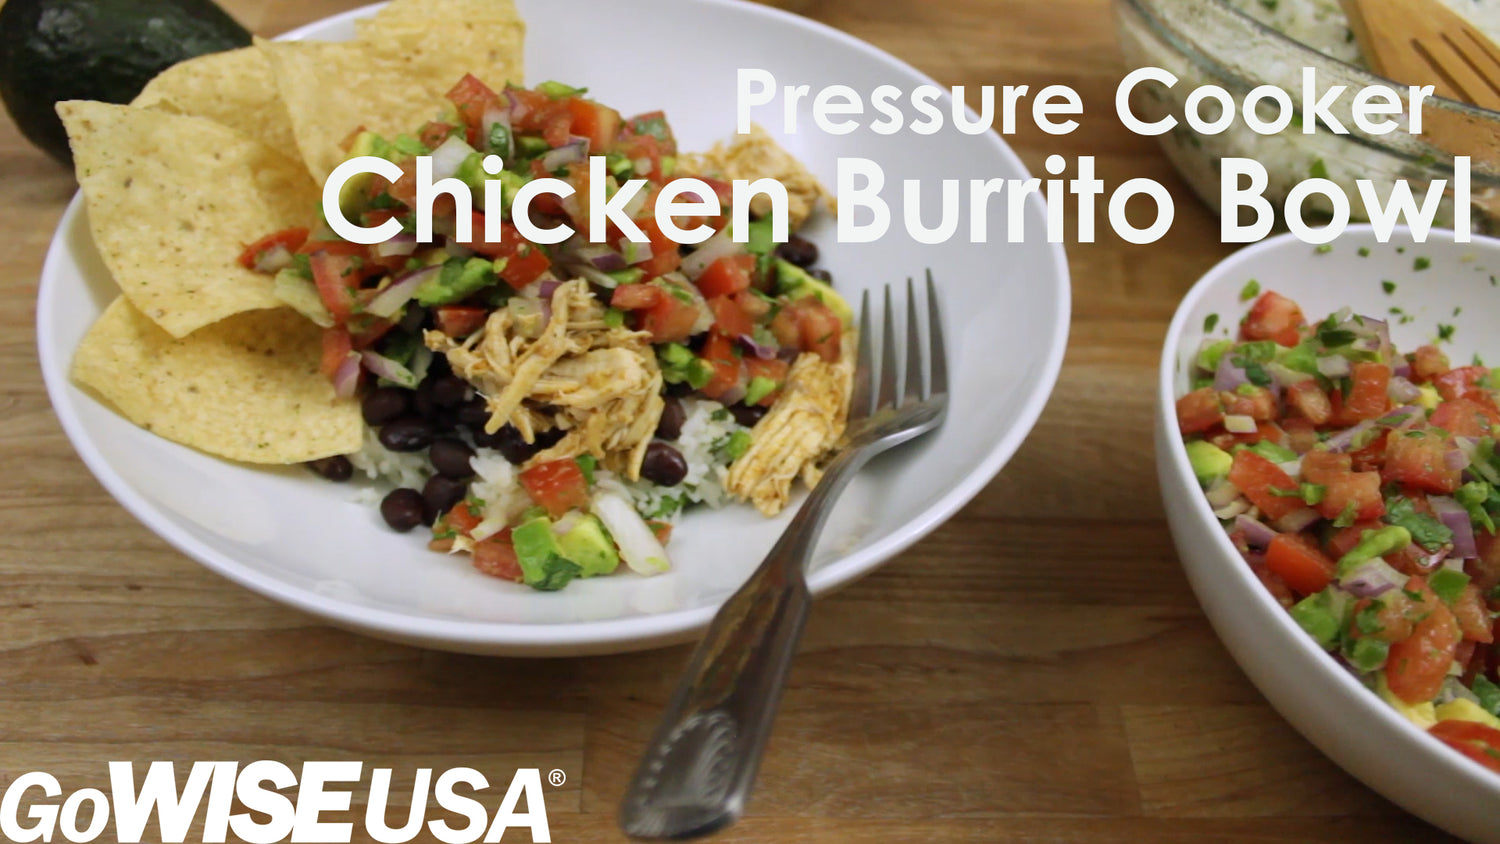 Chicken Burrito Bowl in the Pressure Cooker